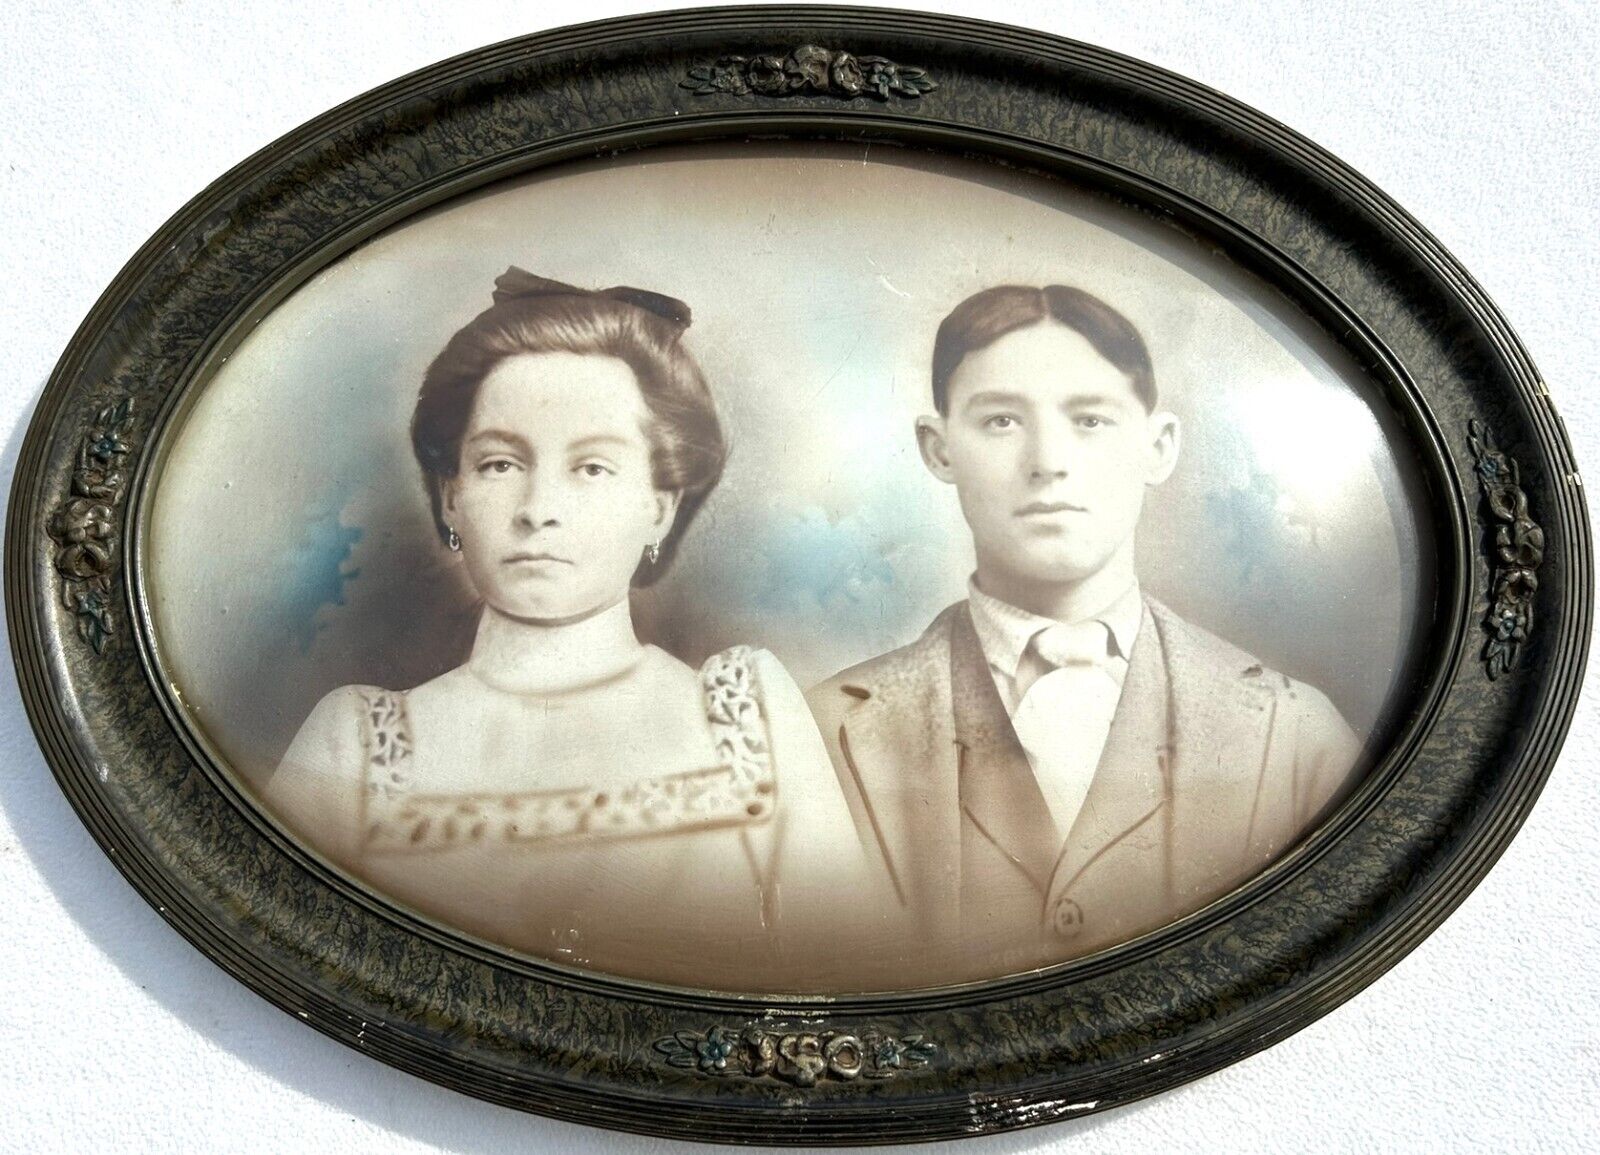 Circa 1900's Bubble Glass/Convex Picture Frame w/ Photo of Couple - 22.75